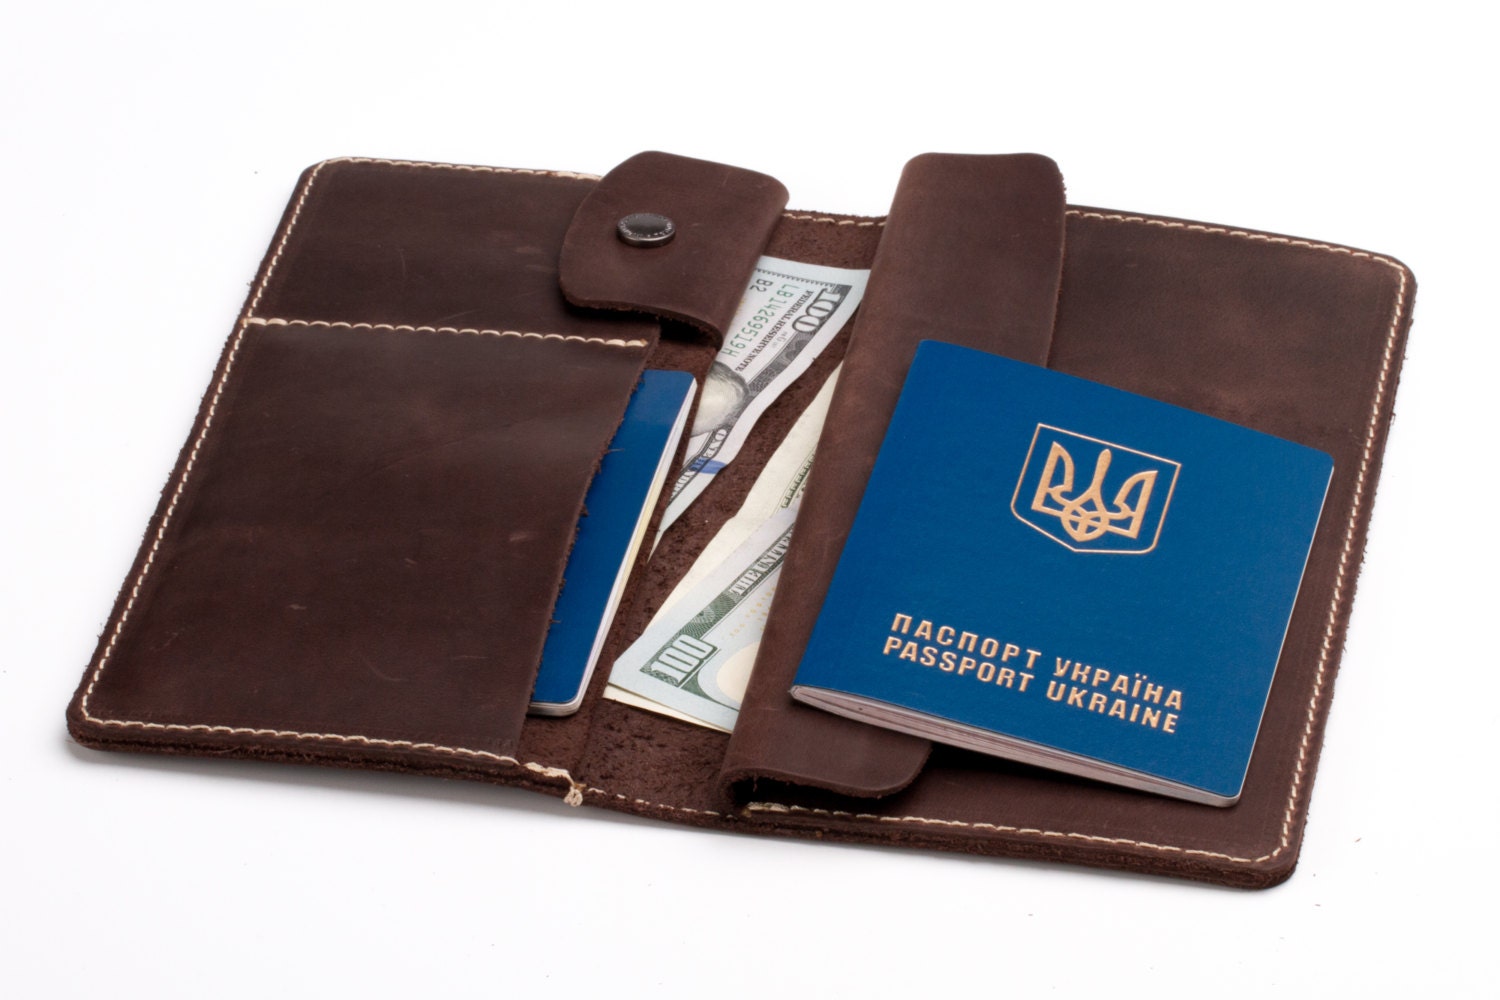 Passport Holder, Leather Travel Wallet, Passport Holder, Passport, Boarding Pass Travel Document Case By LeatherRachiba